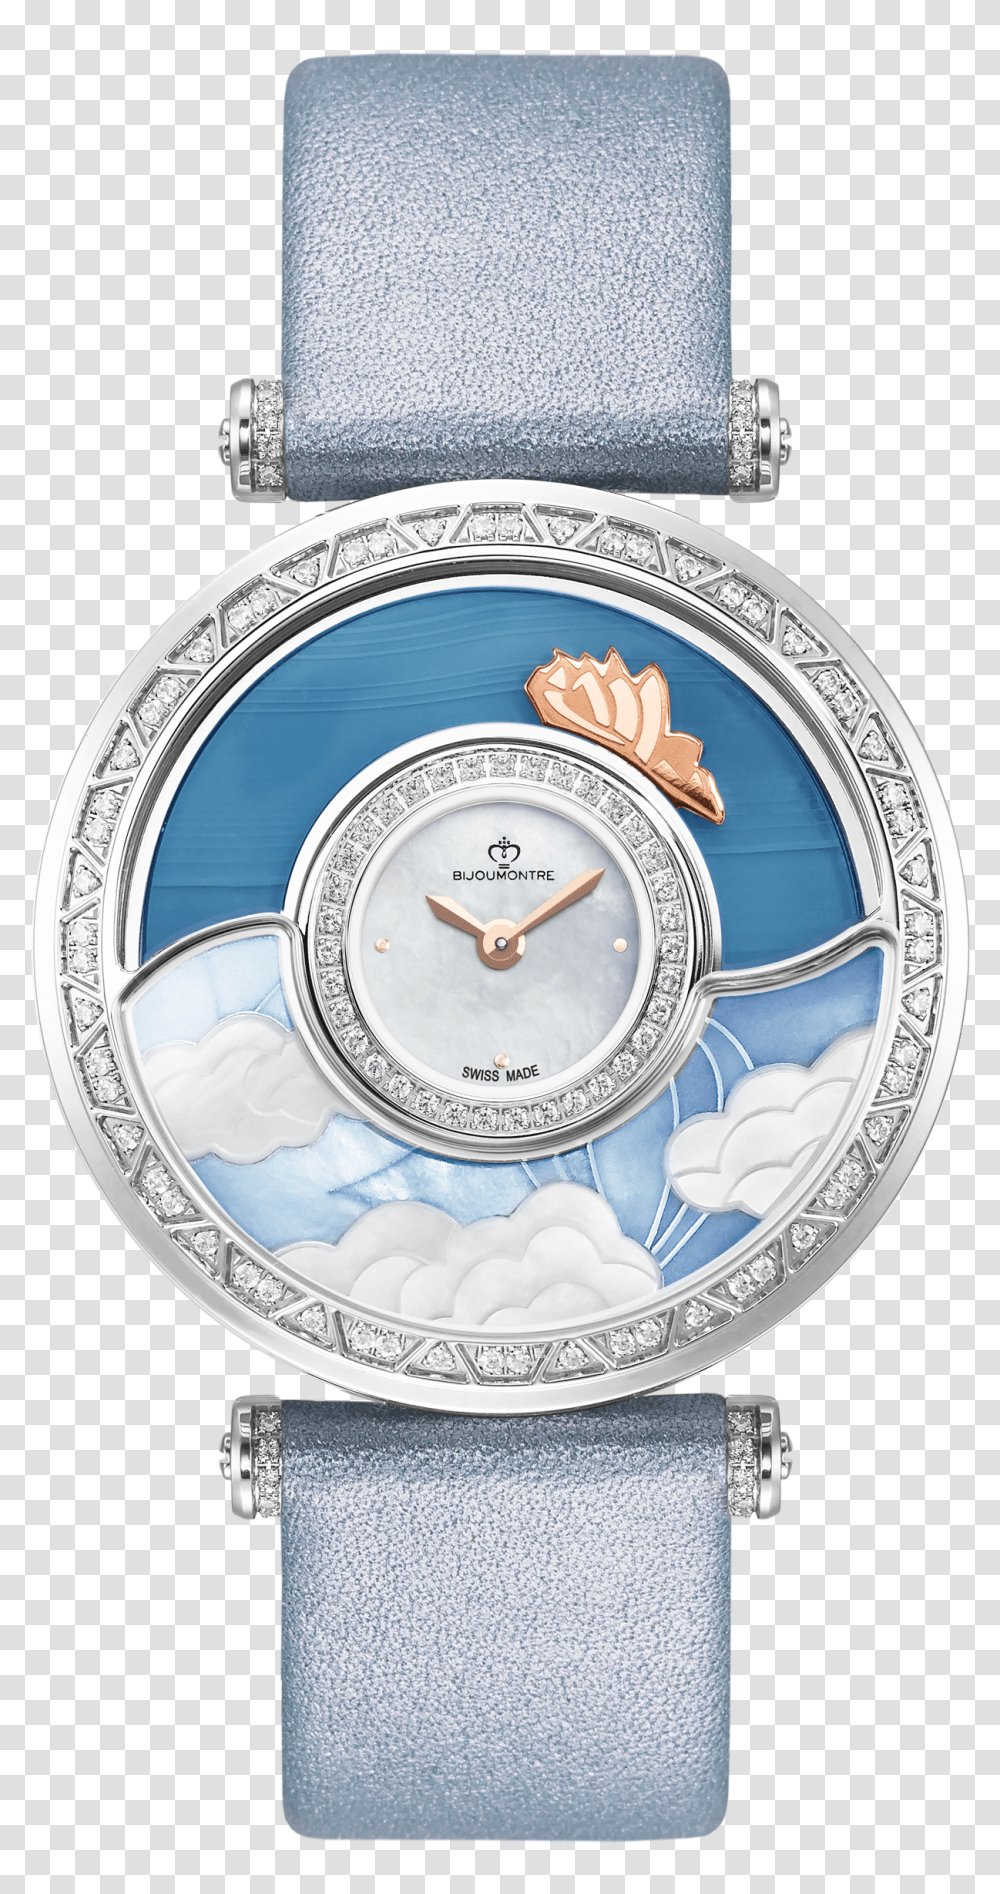 Analog Watch, Analog Clock, Wristwatch, Alarm Clock, Clock Tower Transparent Png